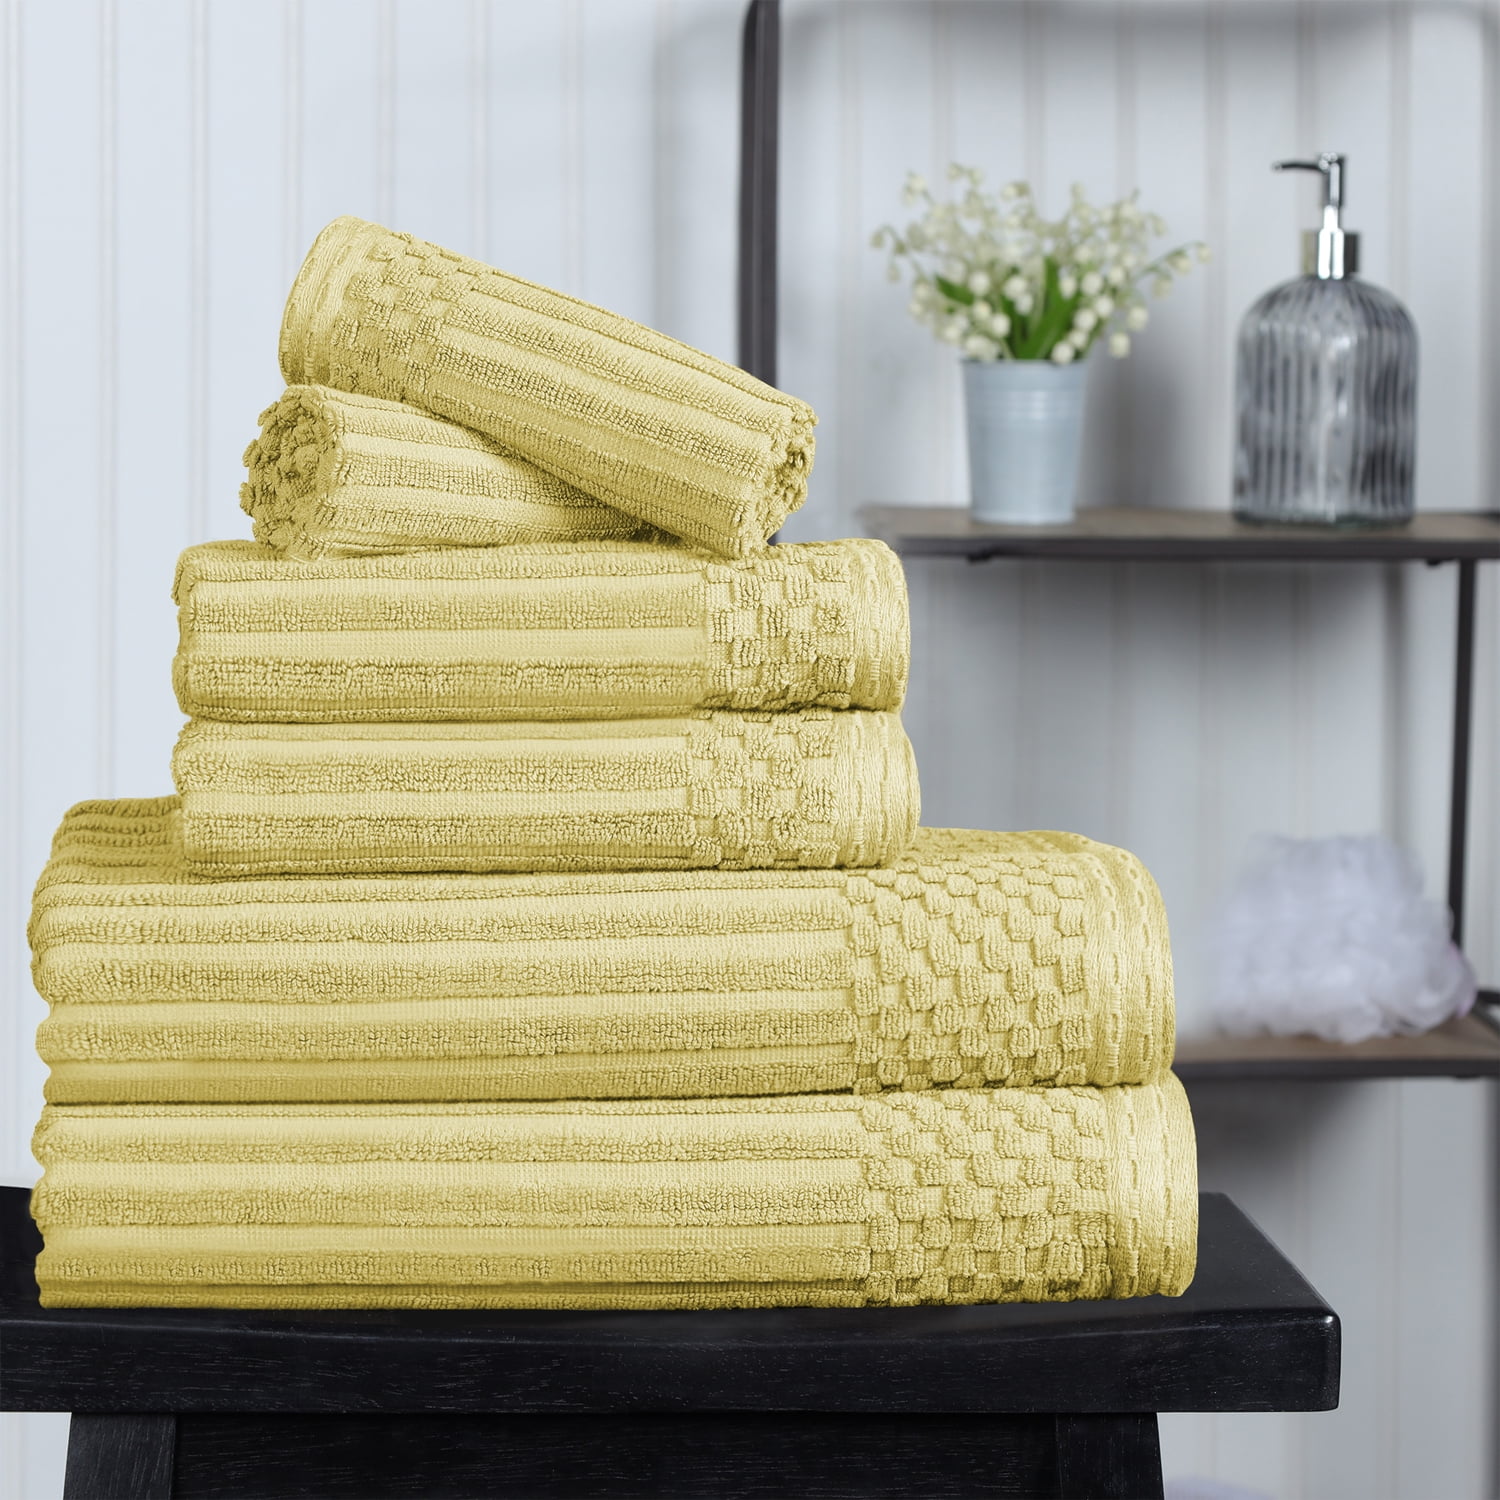 Sobel Westex 6 Piece Towel Set Majest - Macy's